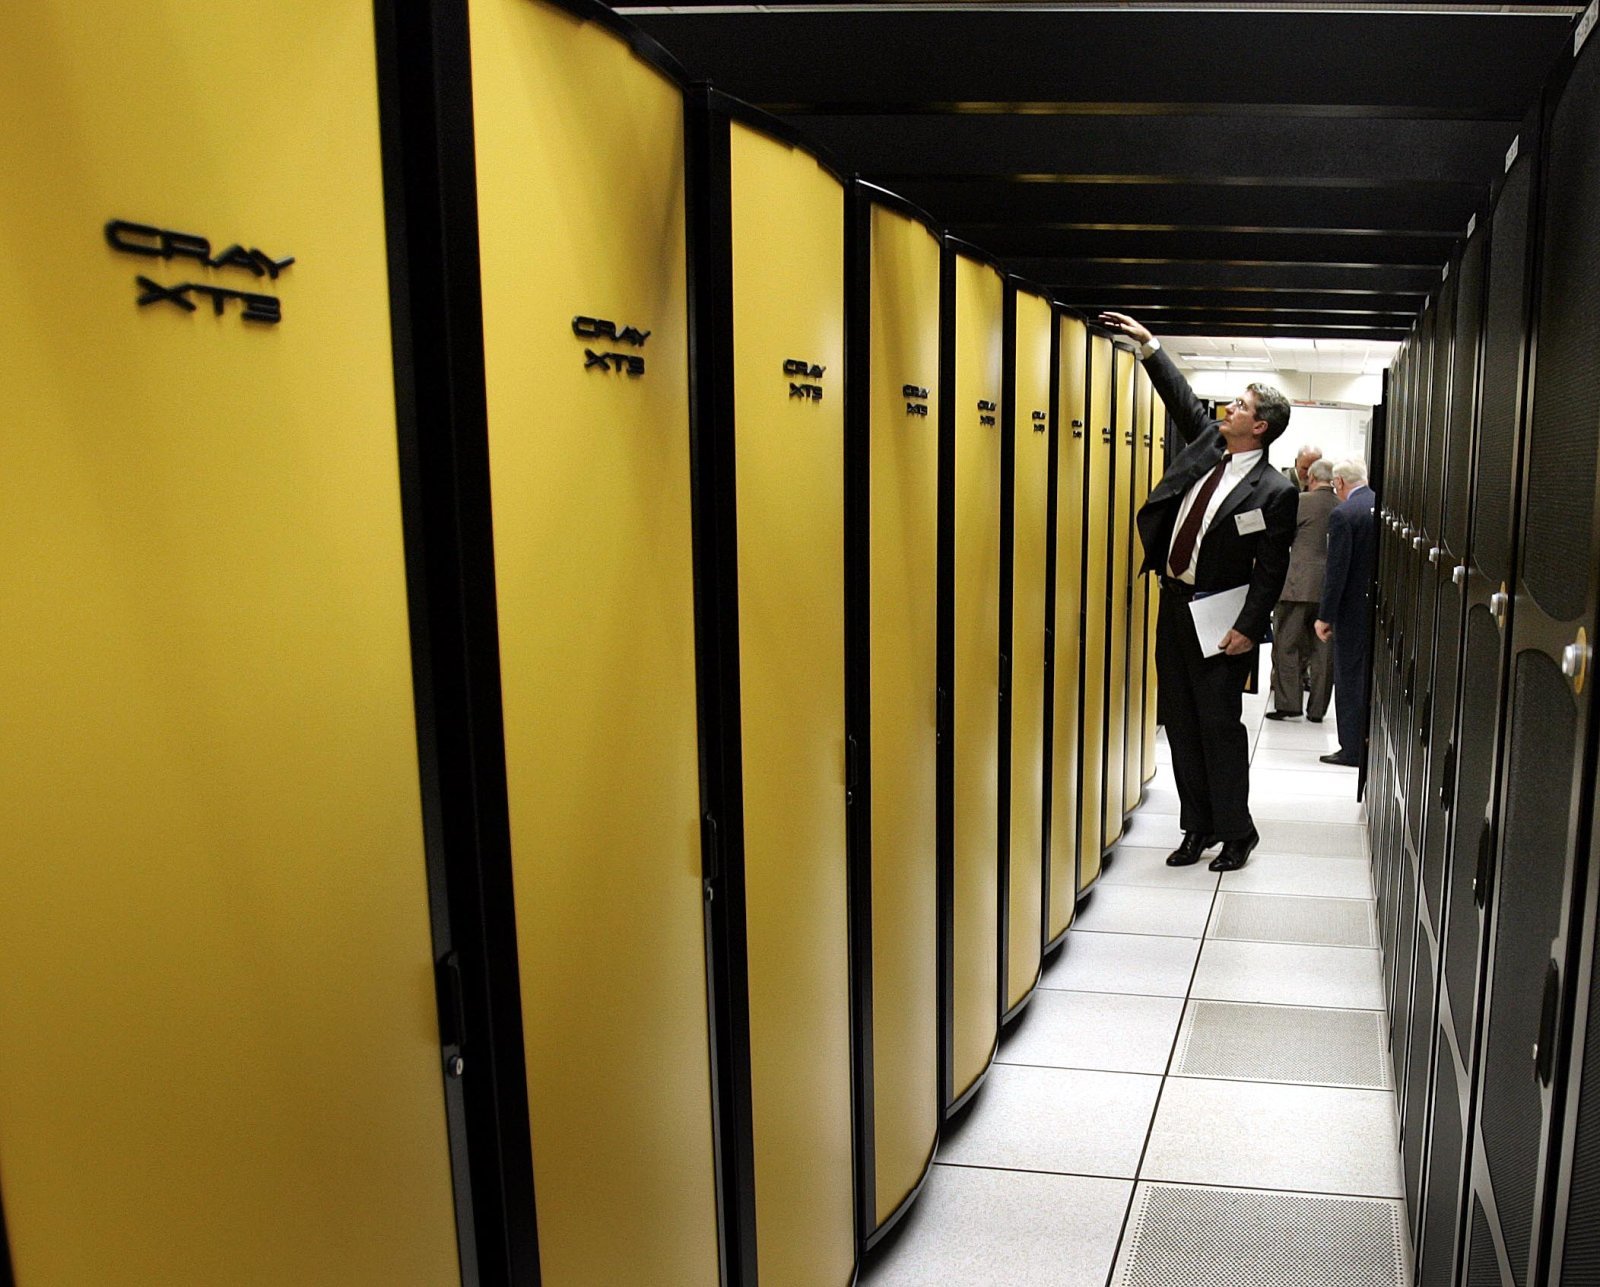 شركة إتش بي تستحوذ على صانعة الحواسيب العملاقة Cray بـ 1.3 مليار دولار